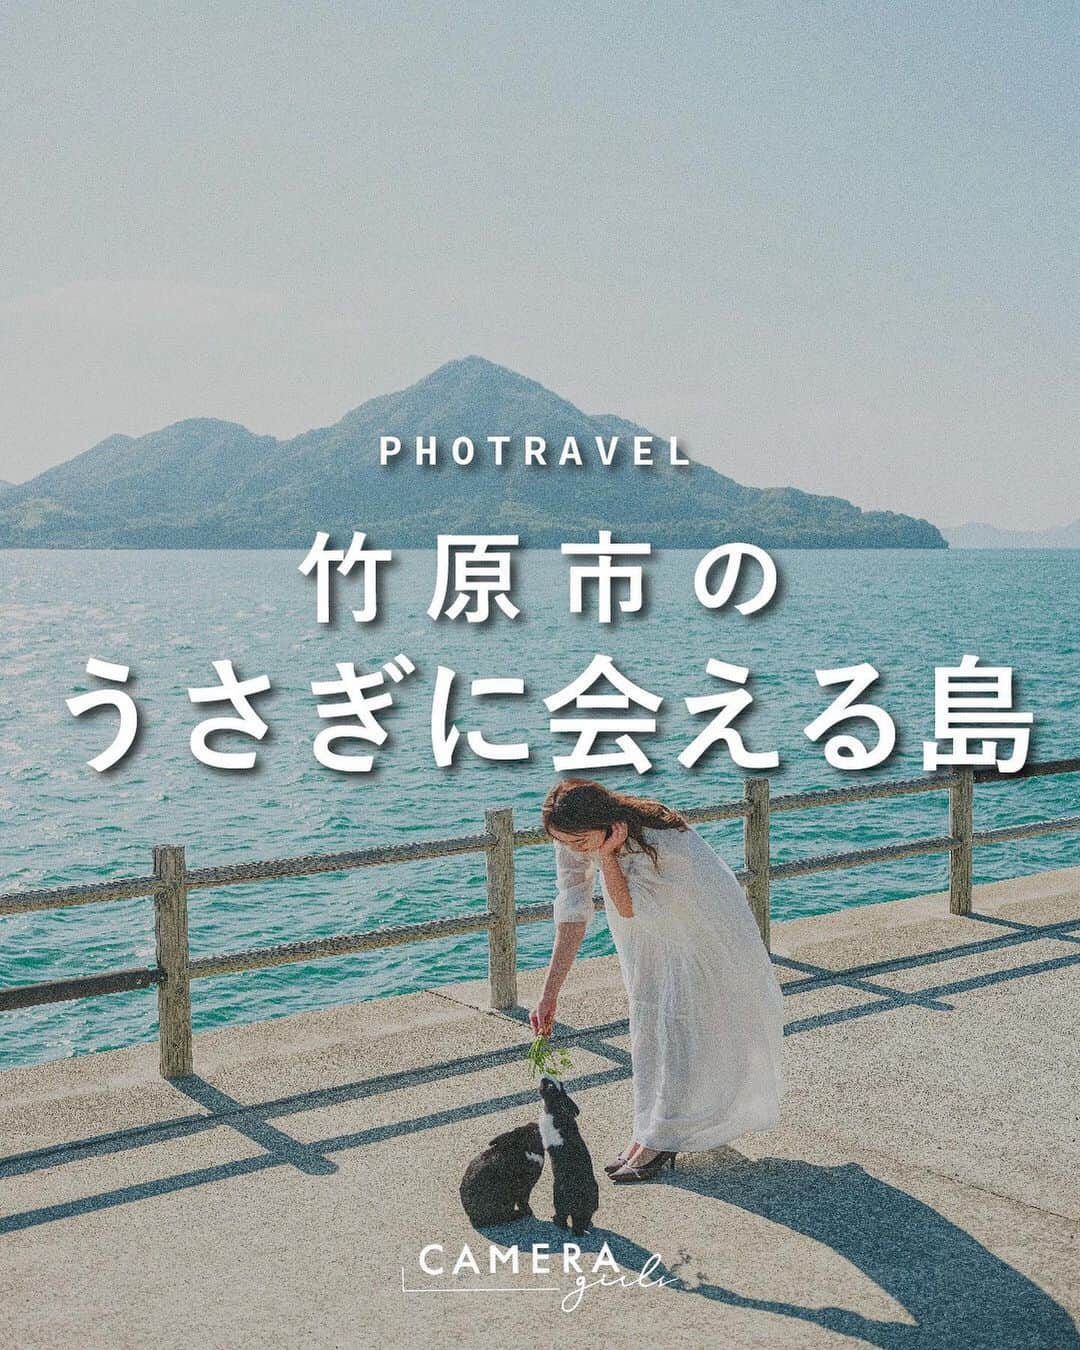 東京カメラガールズのインスタグラム：「. 広島の『うさぎ島』を知っていますか🐰？  広島県竹原市の瀬戸内海に浮かぶ『大久野島』は、別名・うさぎ島と呼ばれ、まさにうさぎの楽園🐰💓  可愛いうさぎたちと穏やかな景色に囲まれている癒しの島。うさぎ島ならではのフォトスポットもあるので、訪れた際は存分に楽しんで癒されてくださいね☺️  ※繊細なうさぎたちなので、休暇村大久野島HPの『うさぎからみんなへのおねがい』を守って優しく触れ合いましょう。  . . #竹原カメラガールズ からも、カメラガールズが旅した竹原の景色をご覧いただくことができます📷✨  . . Attention✨ ※旅をする際はどうか新型コロナウイルス対策を。 ※撮影する際はマナーを大切に。 ※写真撮影時は一時的にマスクを外していますが、常に健康管理や感染対策は万全に、ガイドラインに従ってイベントを開催しています。 . . . #カメラガールズ#カメラ女子#カメラ旅#広島観光#竹原観光#うさぎ島#大久野島#うさぎ #旅が好きな人と繋がりたい #旅好き女子 #カメラ好きな人と繋がりたい #カメラ女子旅」